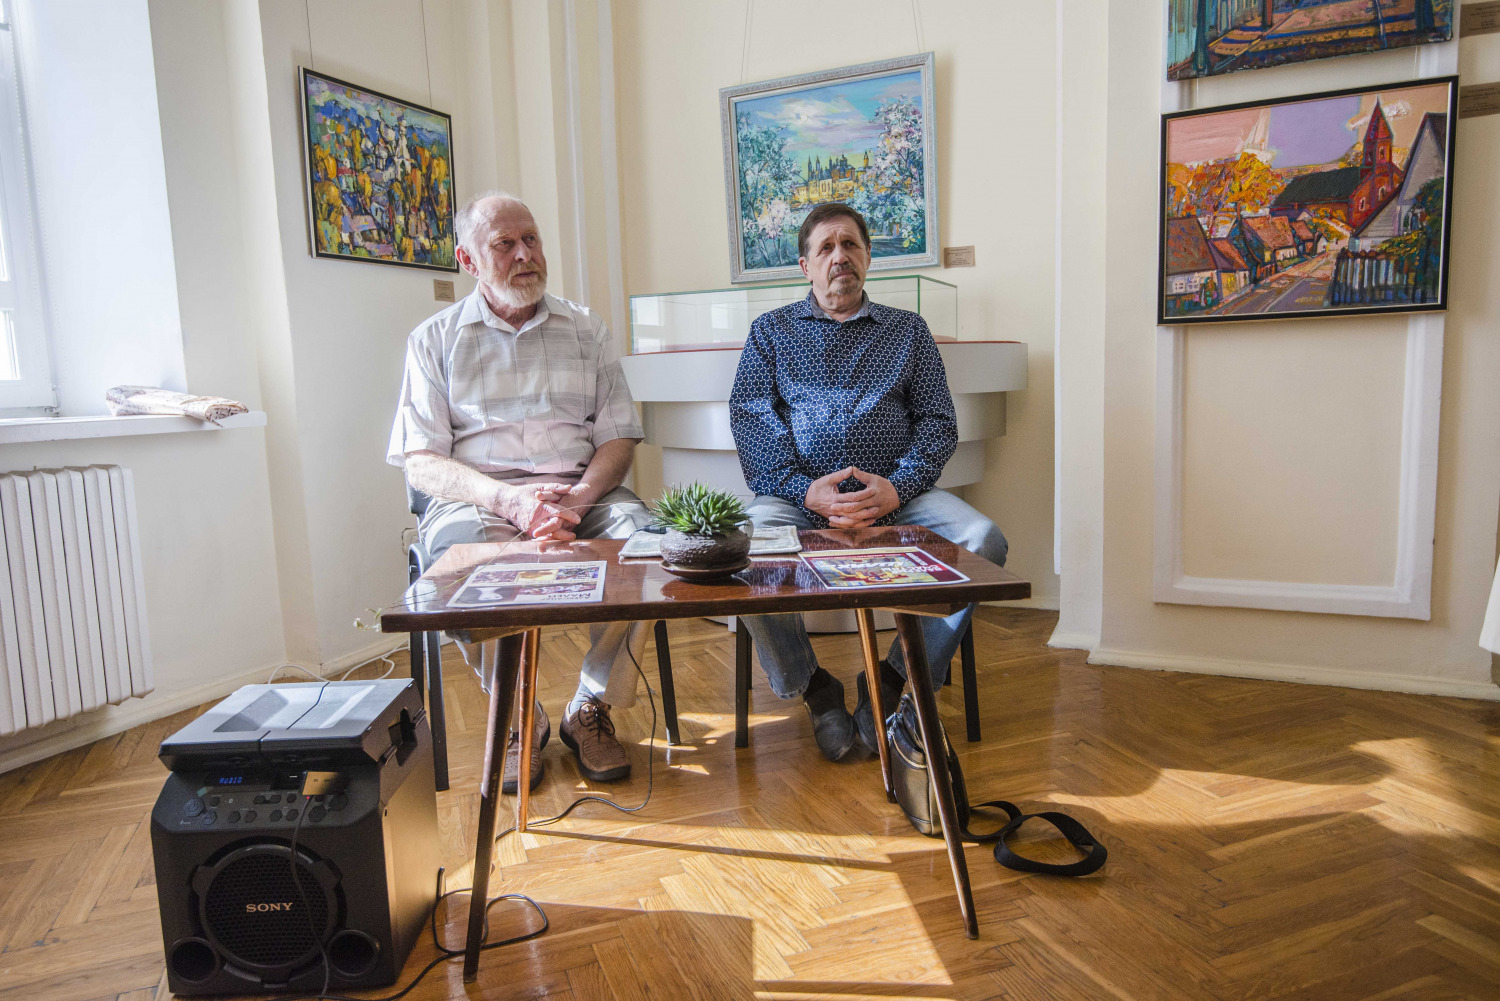 Валерий Счастный и Александр Малей: художественная уникальность, собственный путь, 60-летняя дружба и 70-летний юбилей